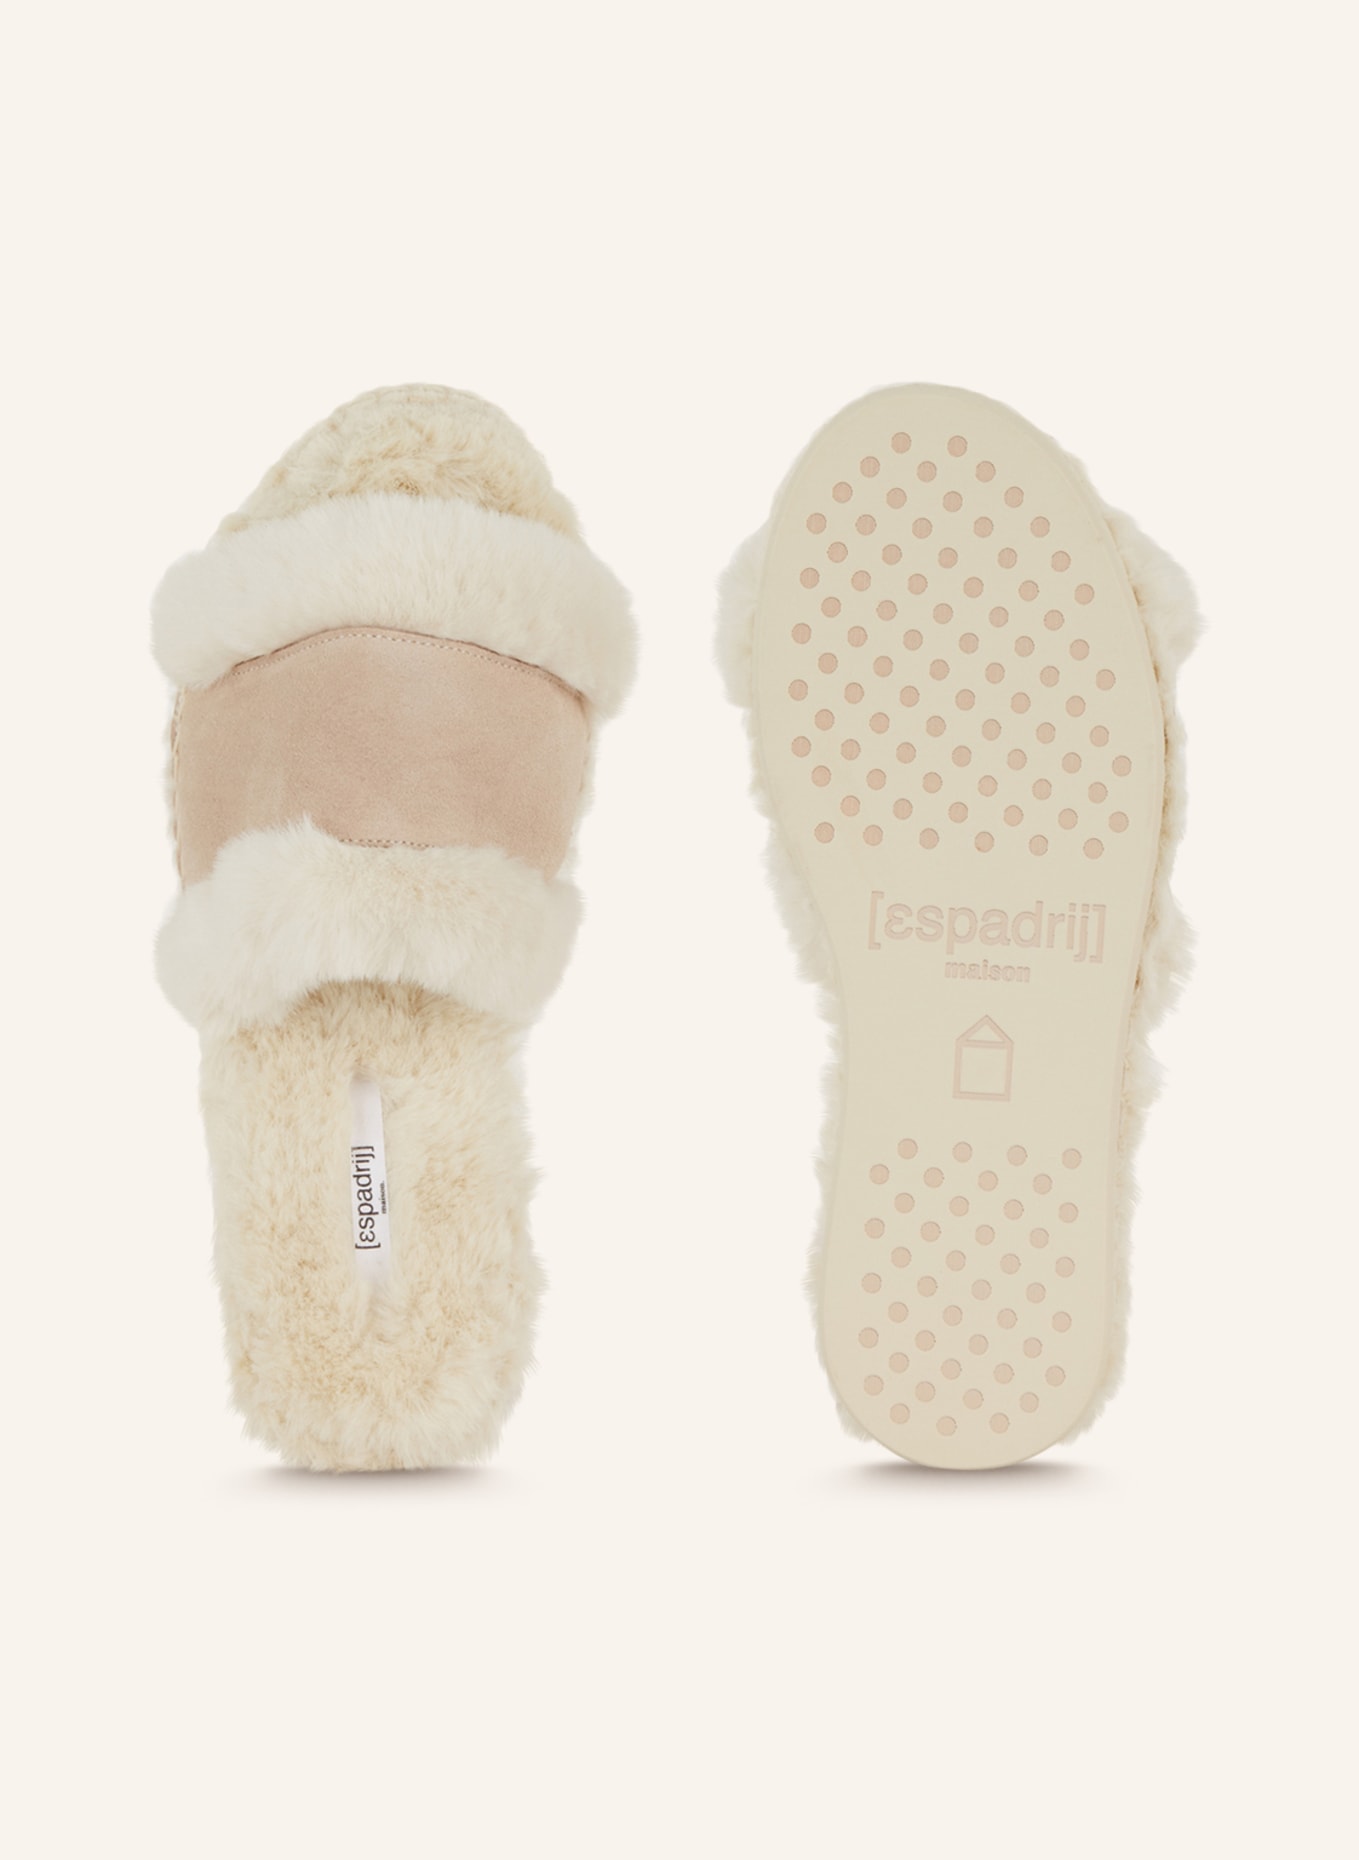 espadrij l'originale Slippers with faux fur, Color: BEIGE (Image 5)